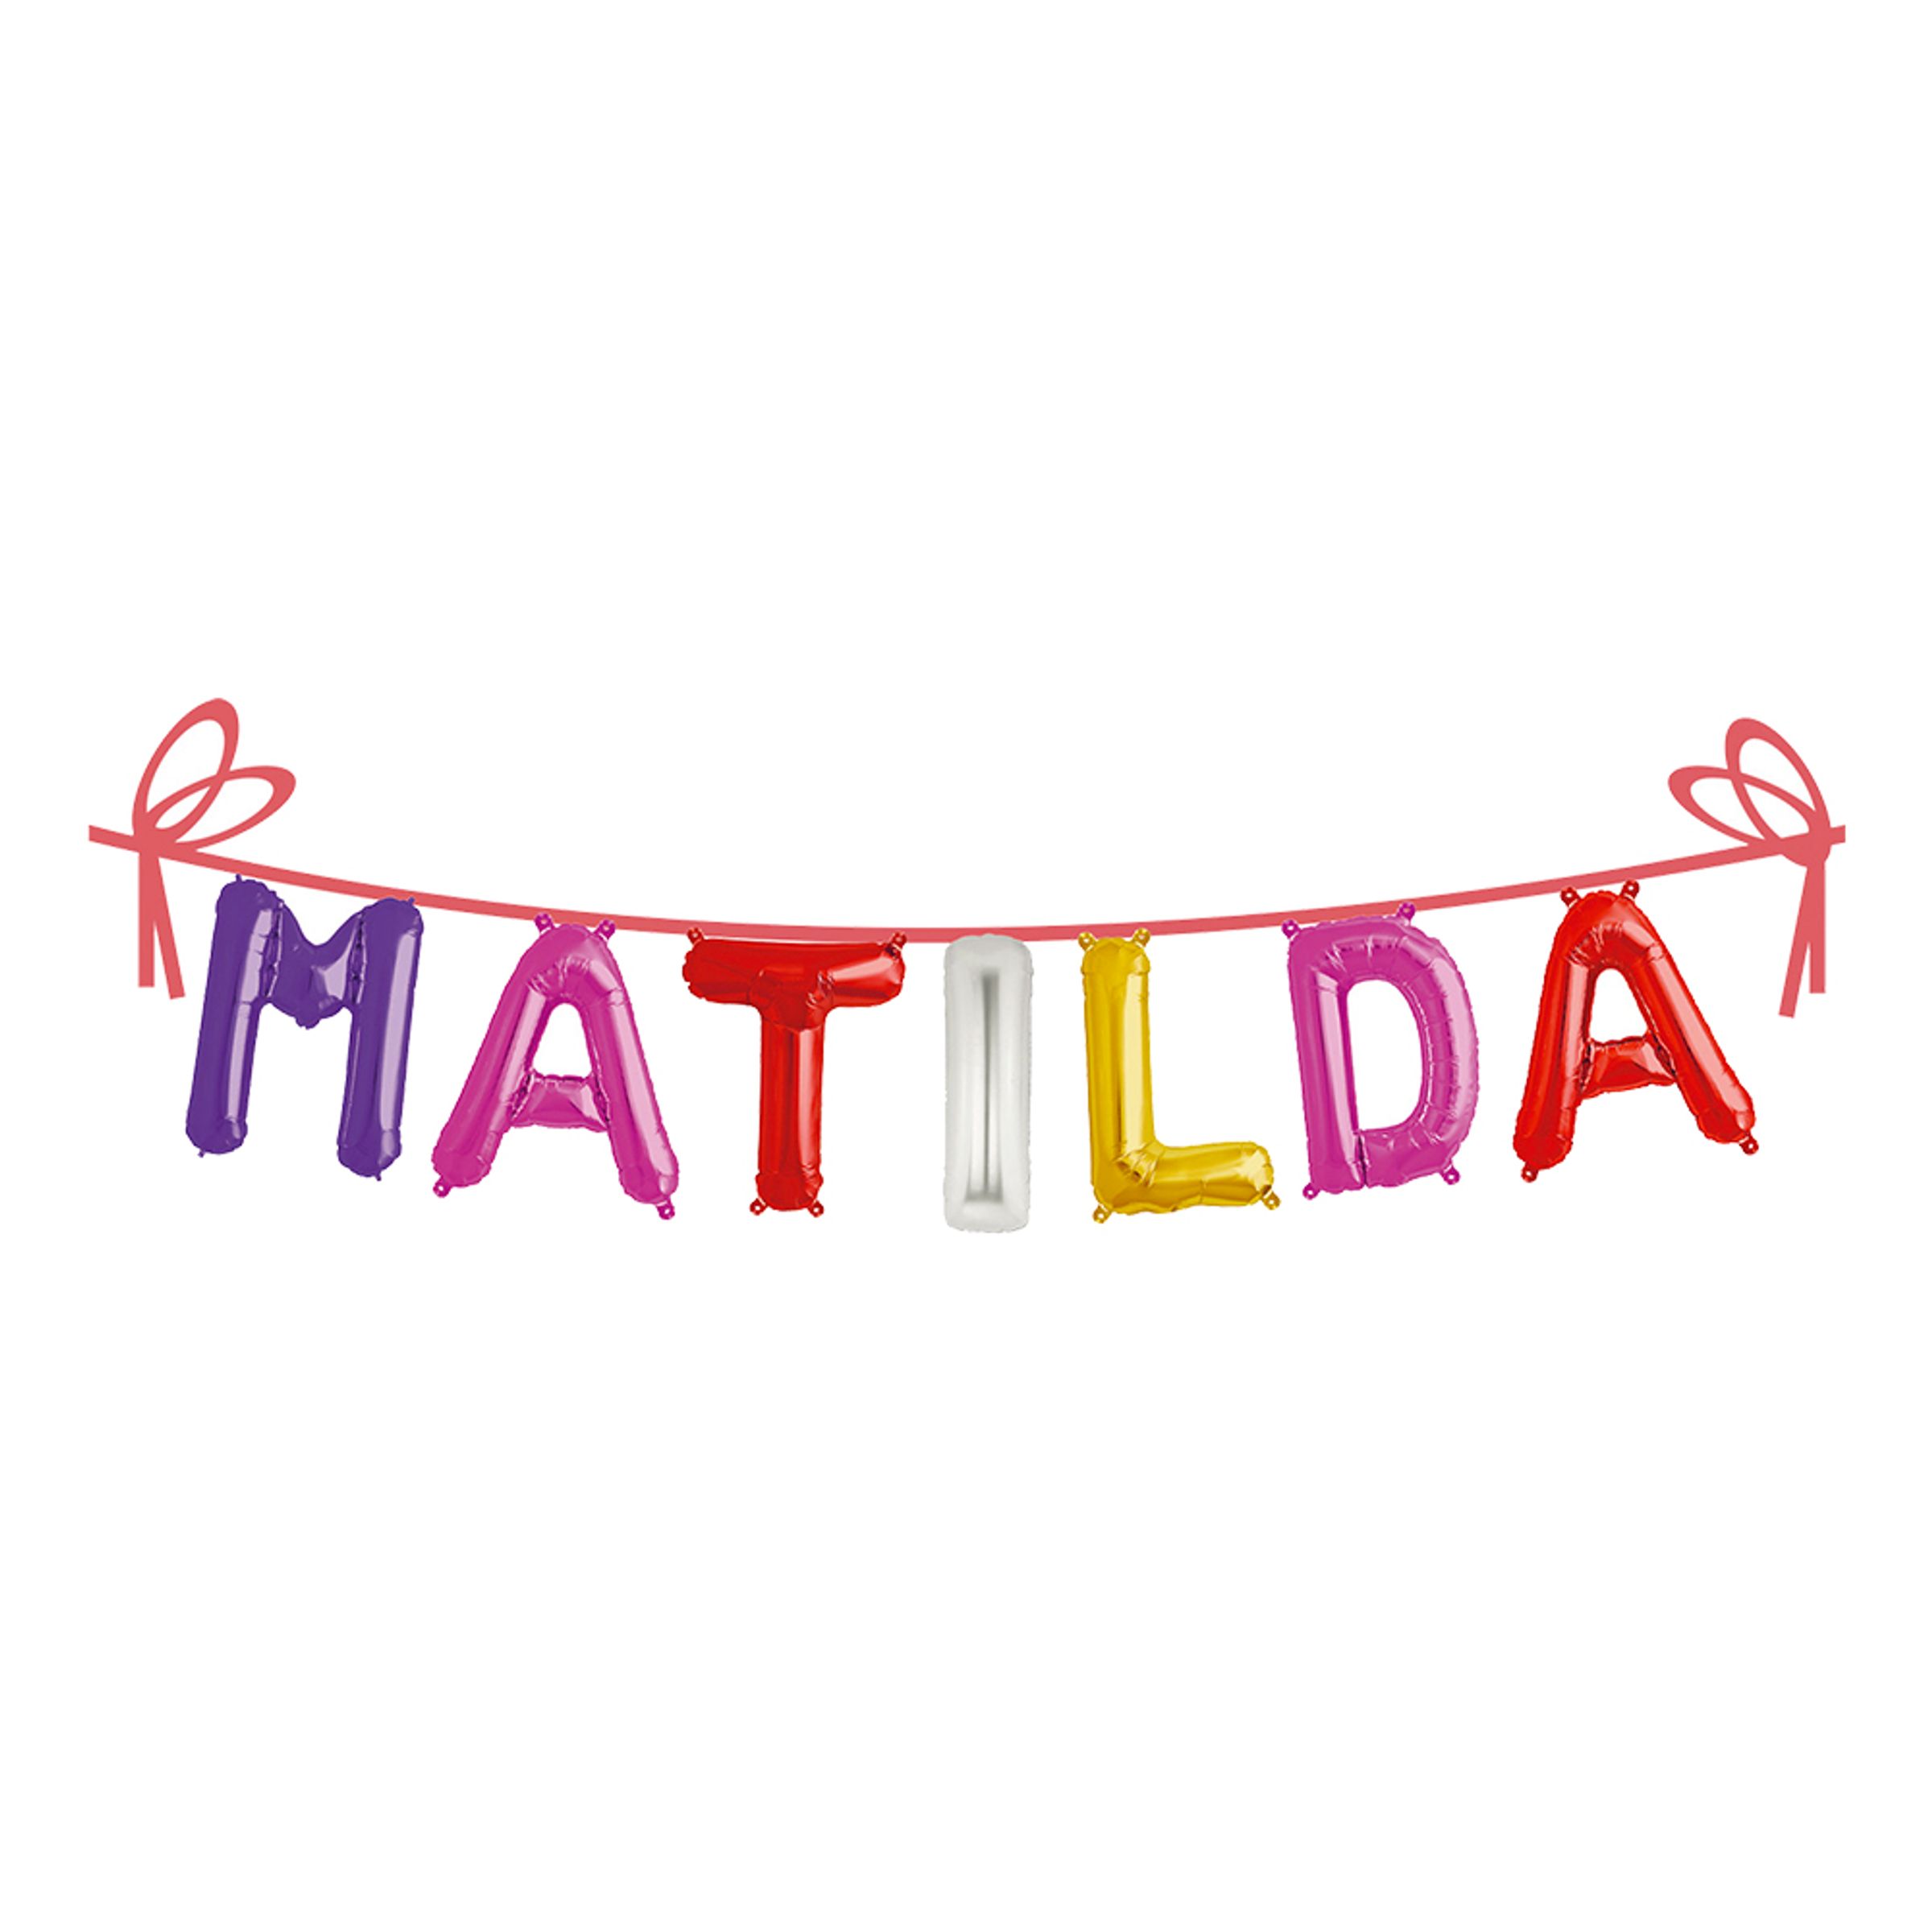 Ballonggirlang Folie Namn - Matilda